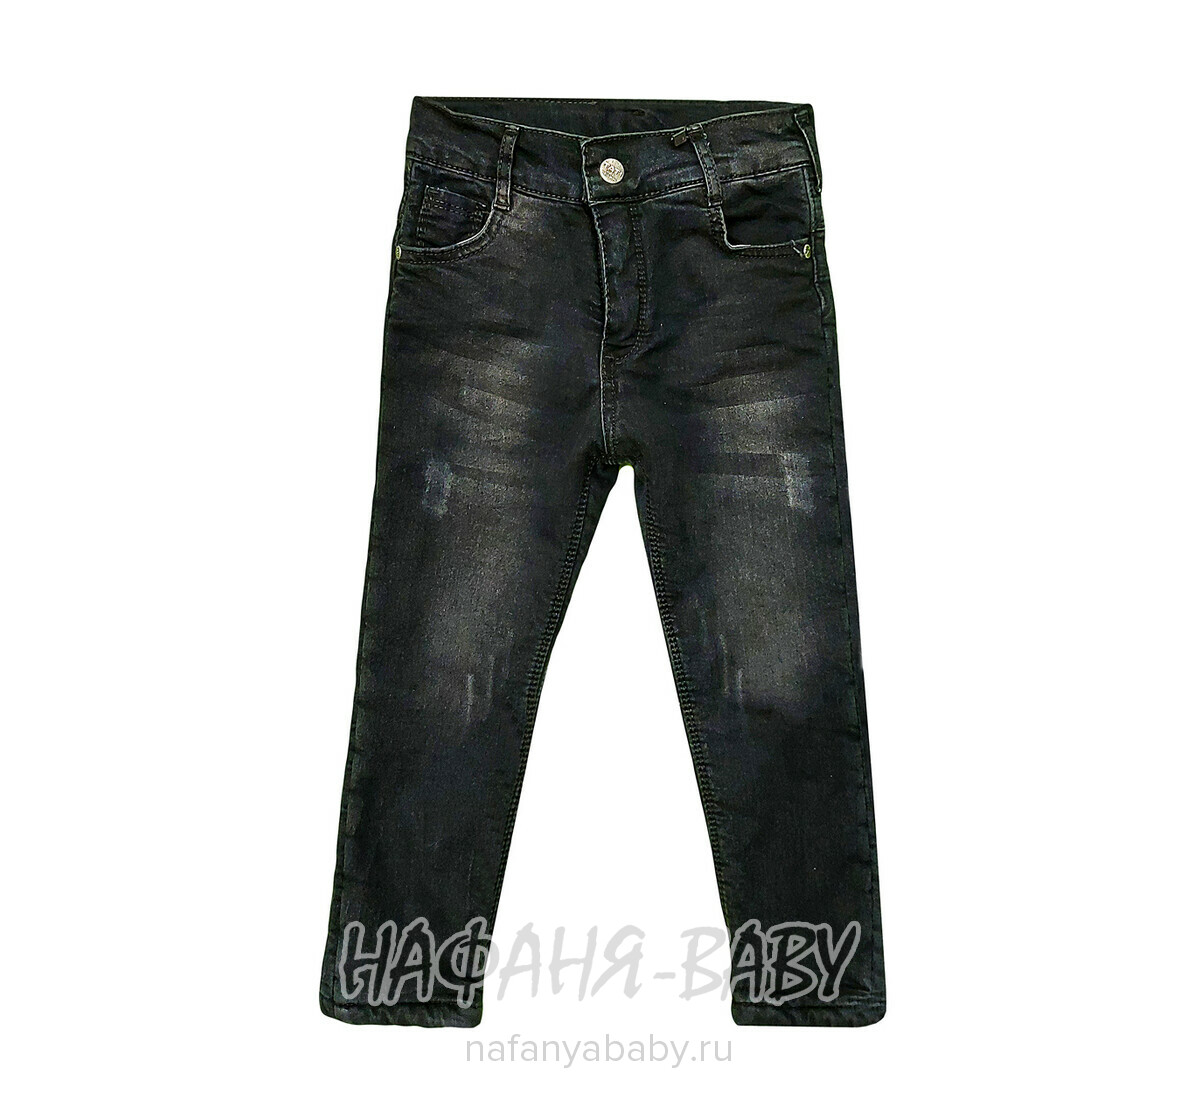 Подростковые теплые джинсы TATI Jeans арт: 4896, 10-15 лет, 5-9 лет, оптом Турция